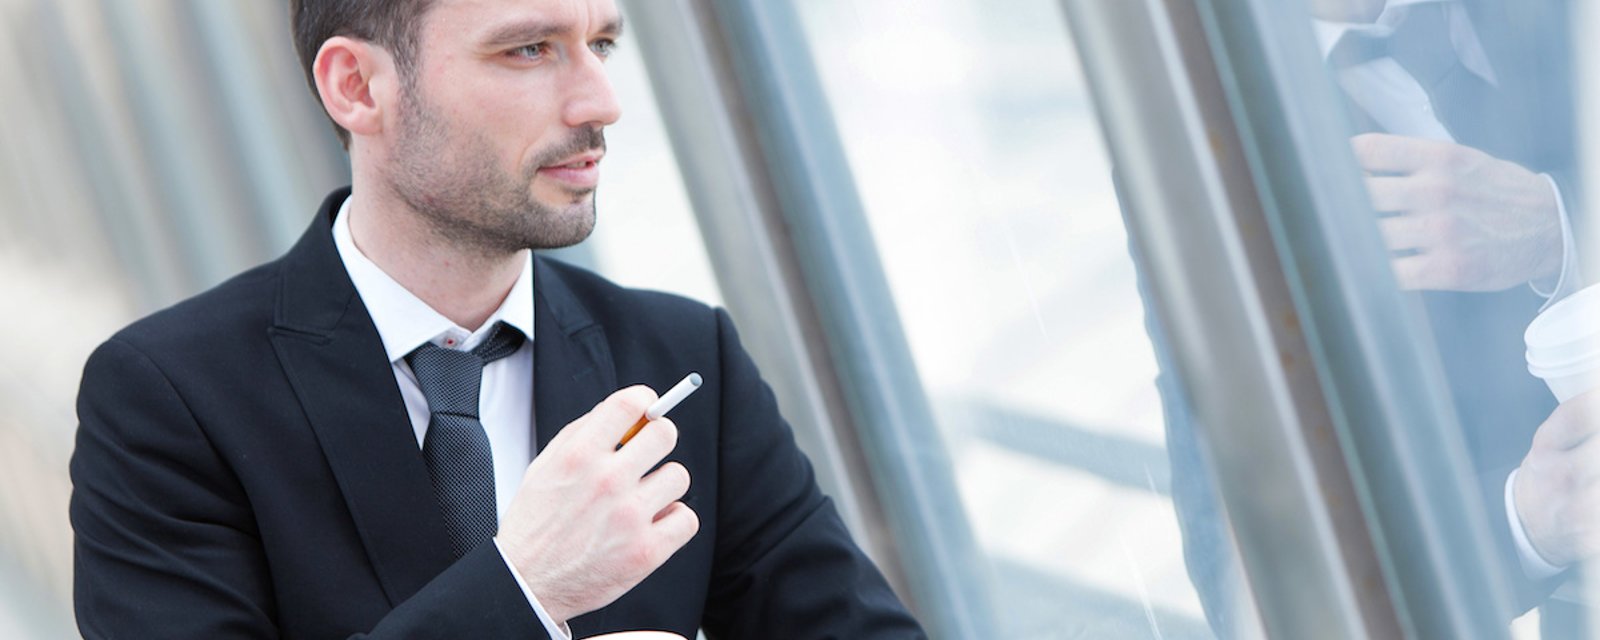 Une entreprise a mis en place une idée audacieuse pour inciter ses employés à cesser de fumer